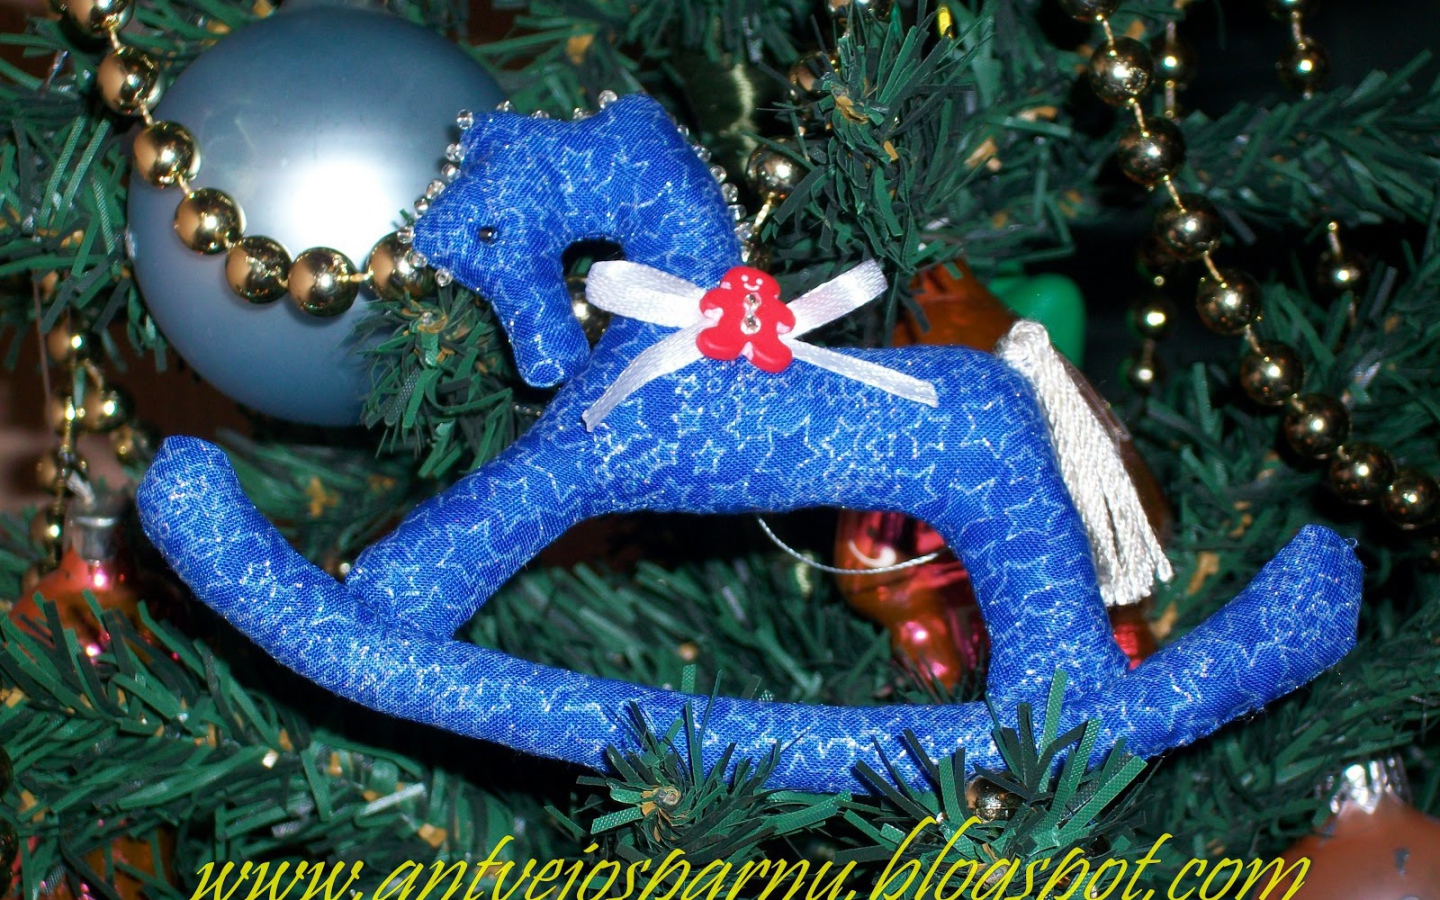 Christmas toy rocking horse